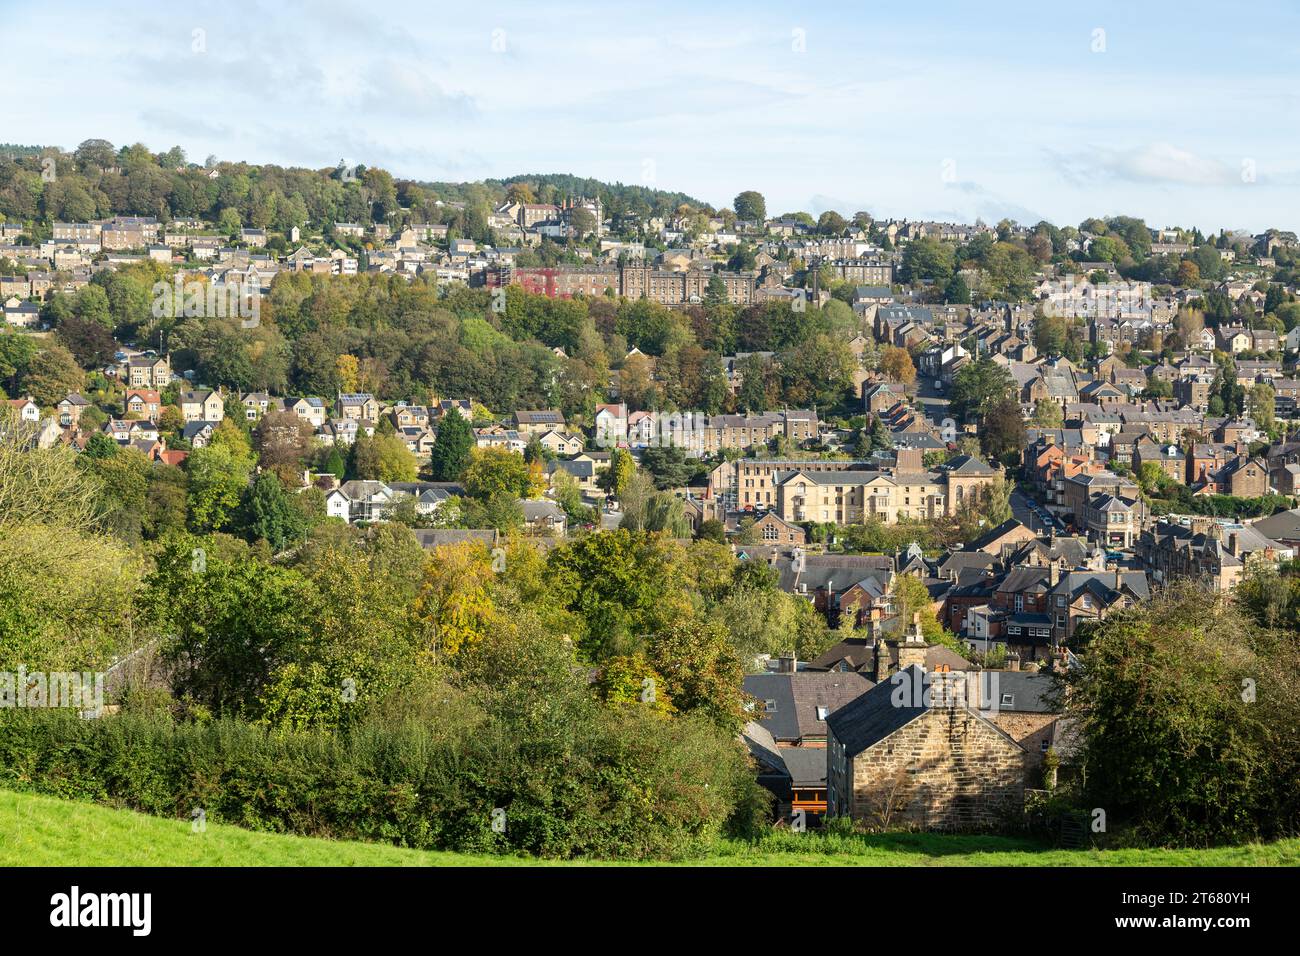 Ein Blick auf Matlock, die Kreisstadt Derbyshire, England Stockfoto